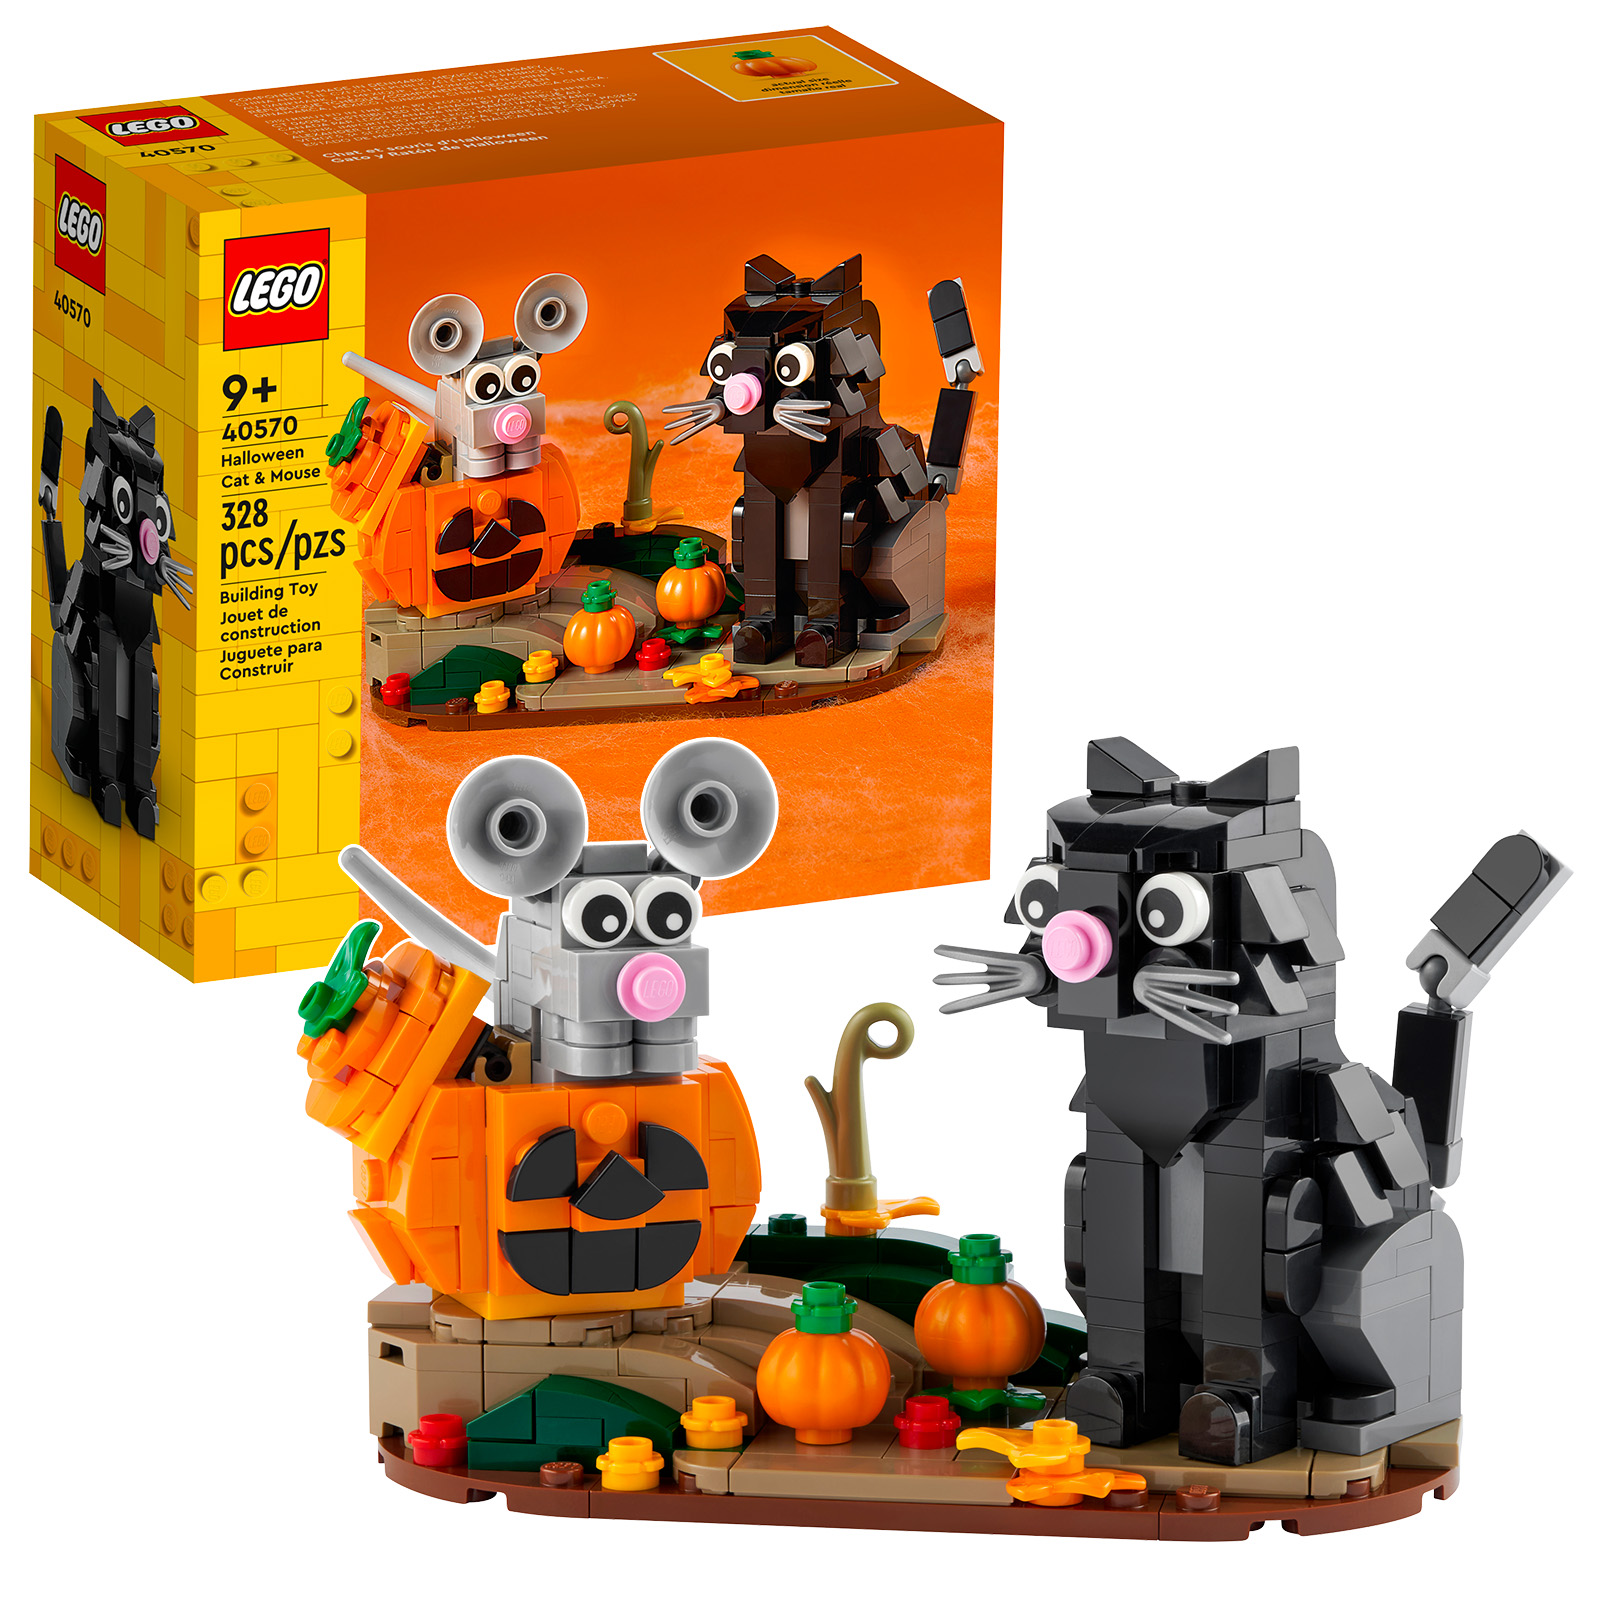 On melkein Halloween: 40570 Halloween Cat & Mouse -setti on verkossa Shopissa